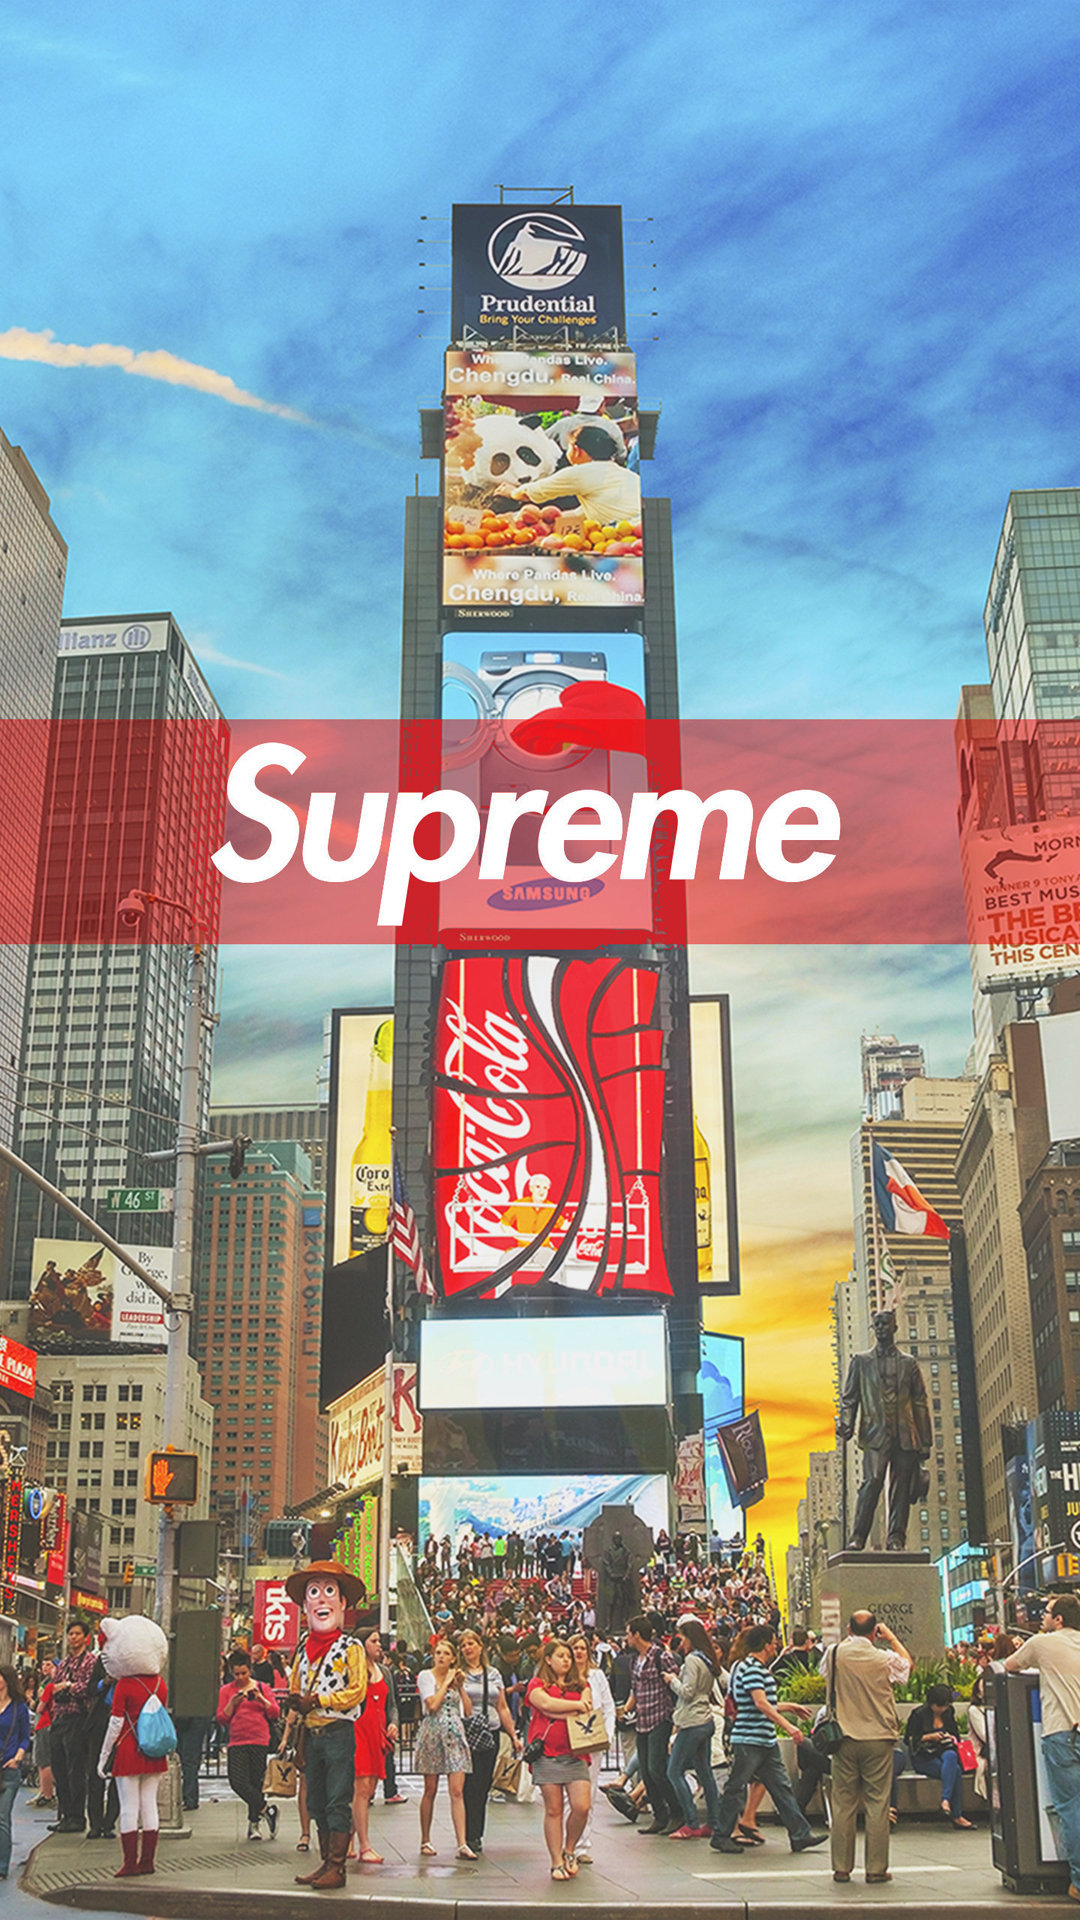 suprême logo fond d'écran hd,la publicité,produit,zone métropolitaine,bannière,affichage publicitaire